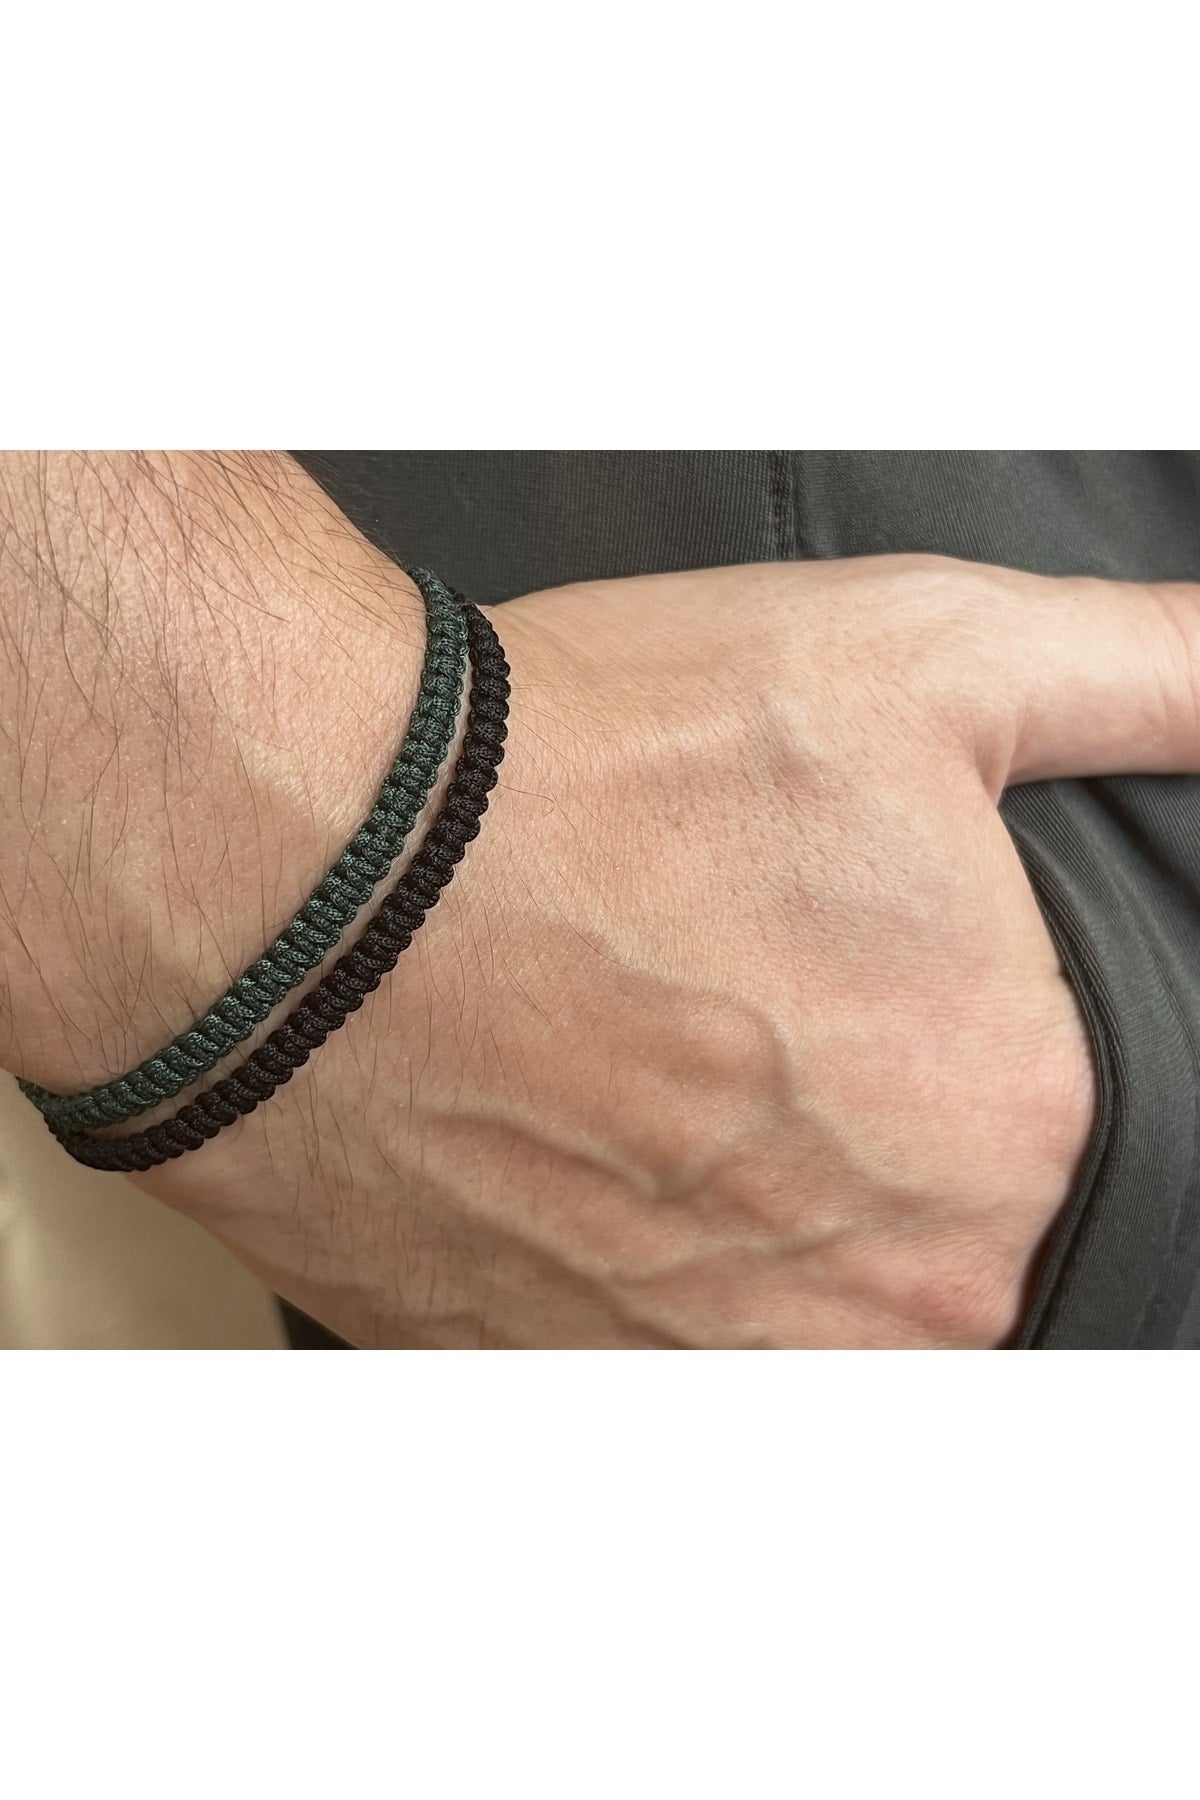 Unisex Macrame Bracelet Black Khaki Green-gift Bracelet-rope Bracelet